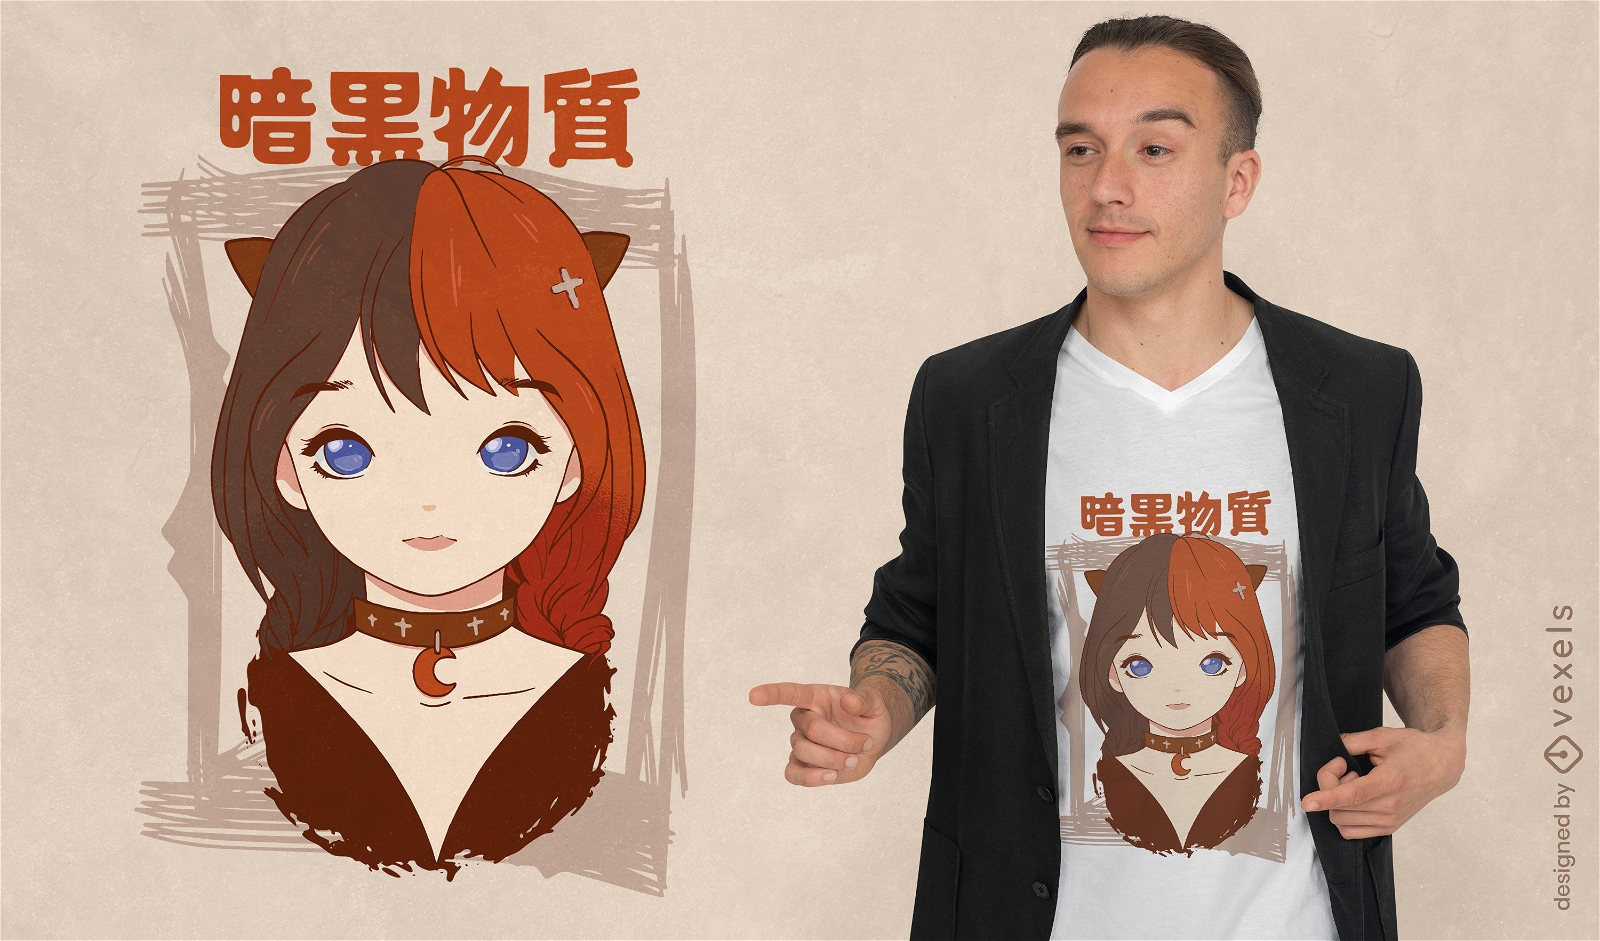 Cute goth girl anime t-shirt design